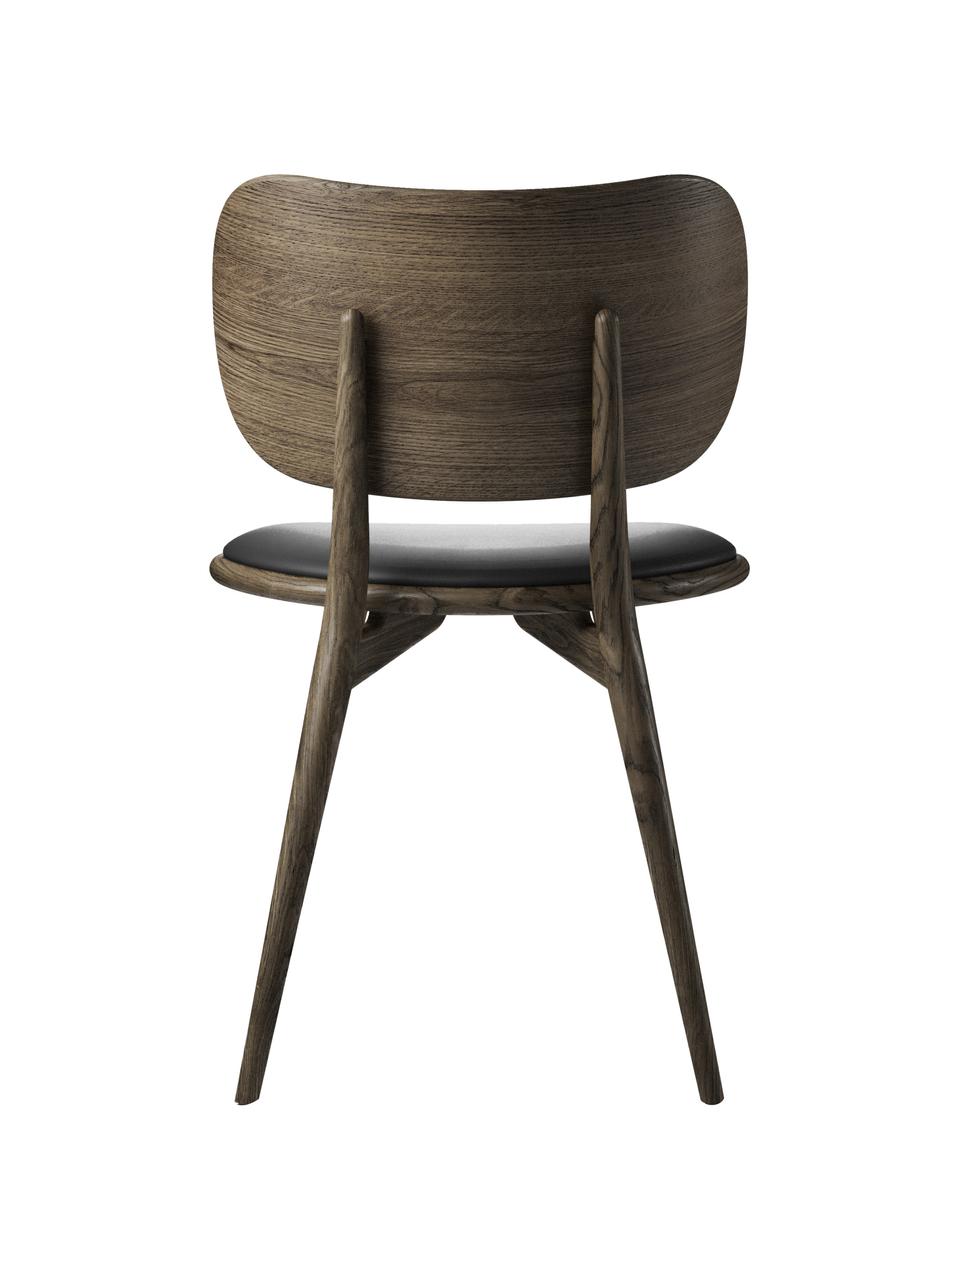 Kožená židle s dřevěnými nohami Rocker, ručně vyrobená | Westwing